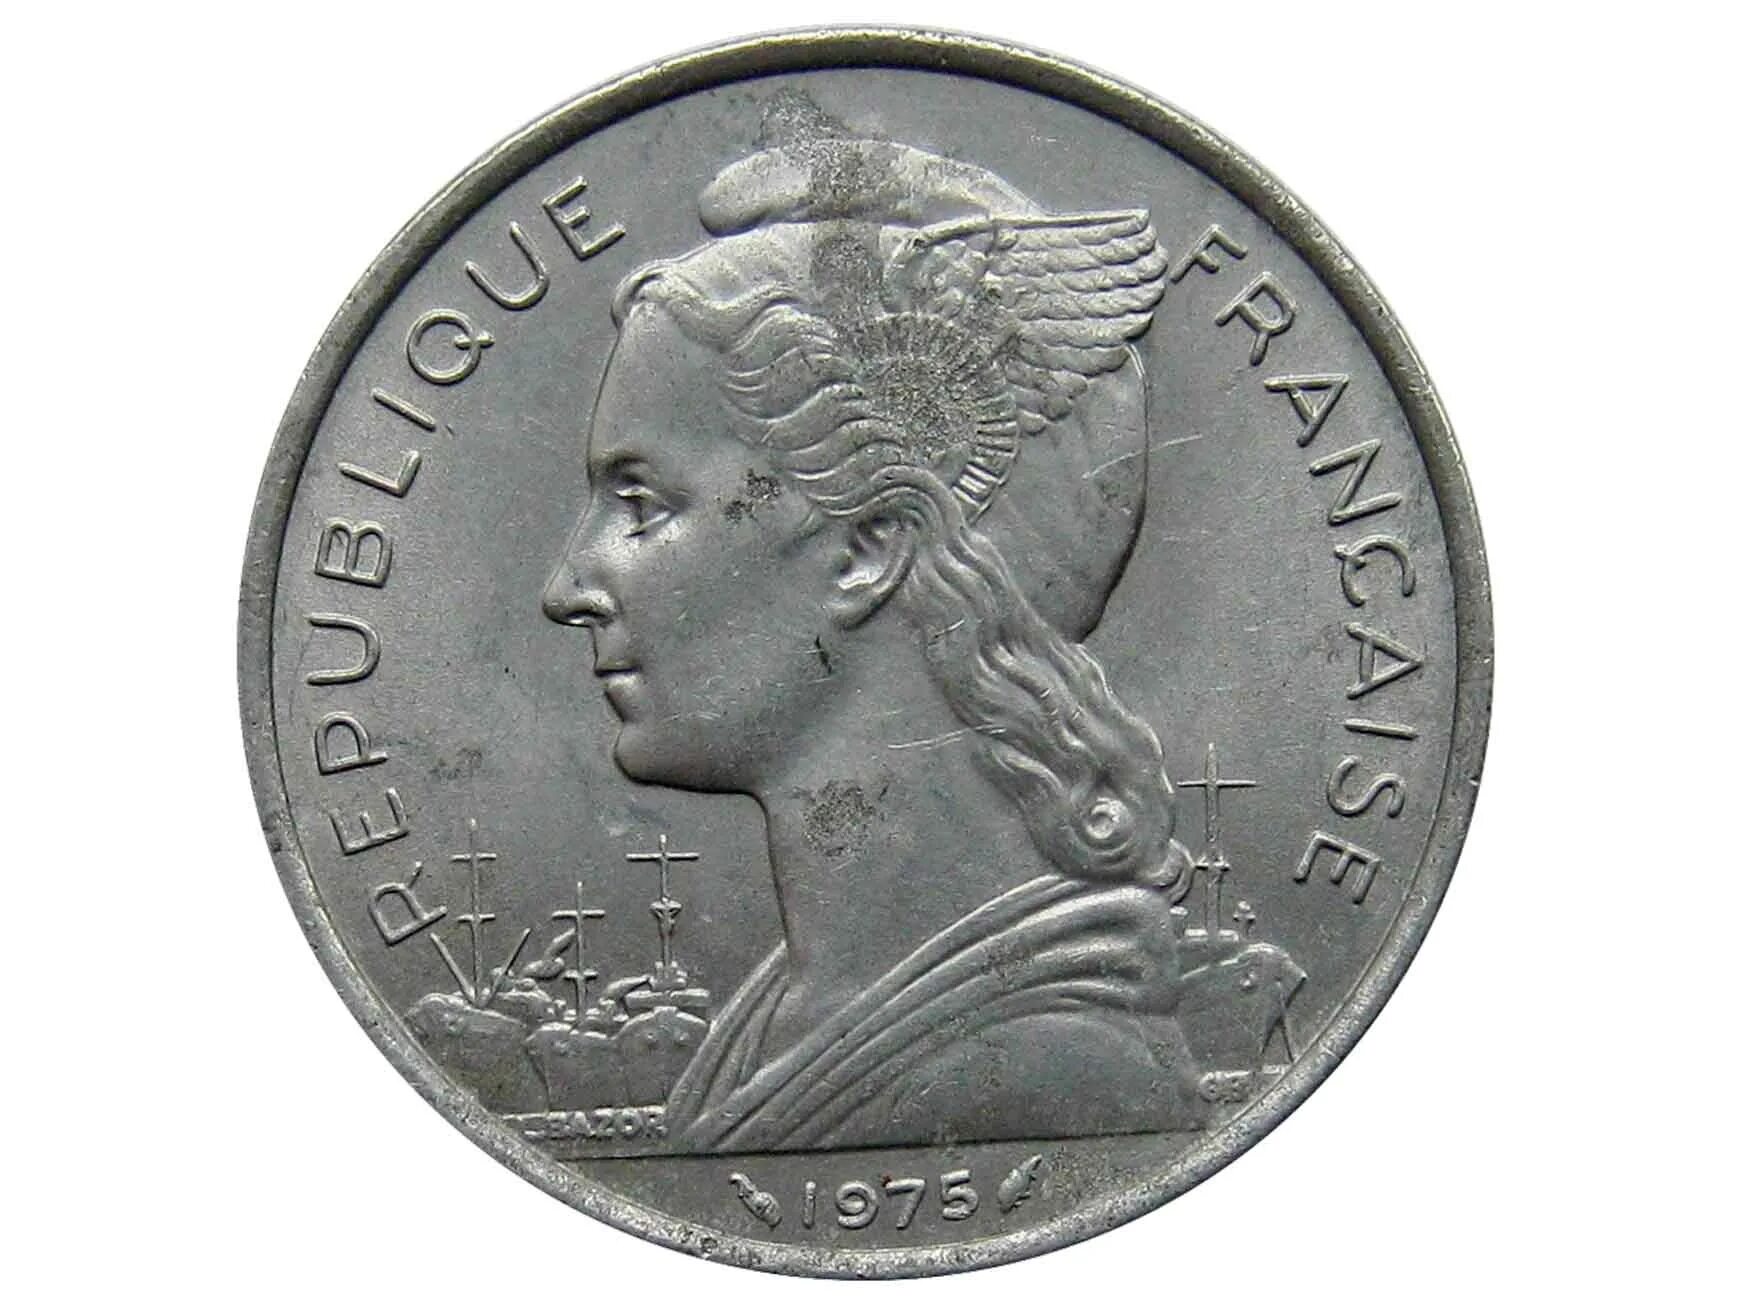 5 Франков 1783г. 5 Francs 1959. Монета Афара и Исса 5 франков. Монета с Гауссом 5 франков.